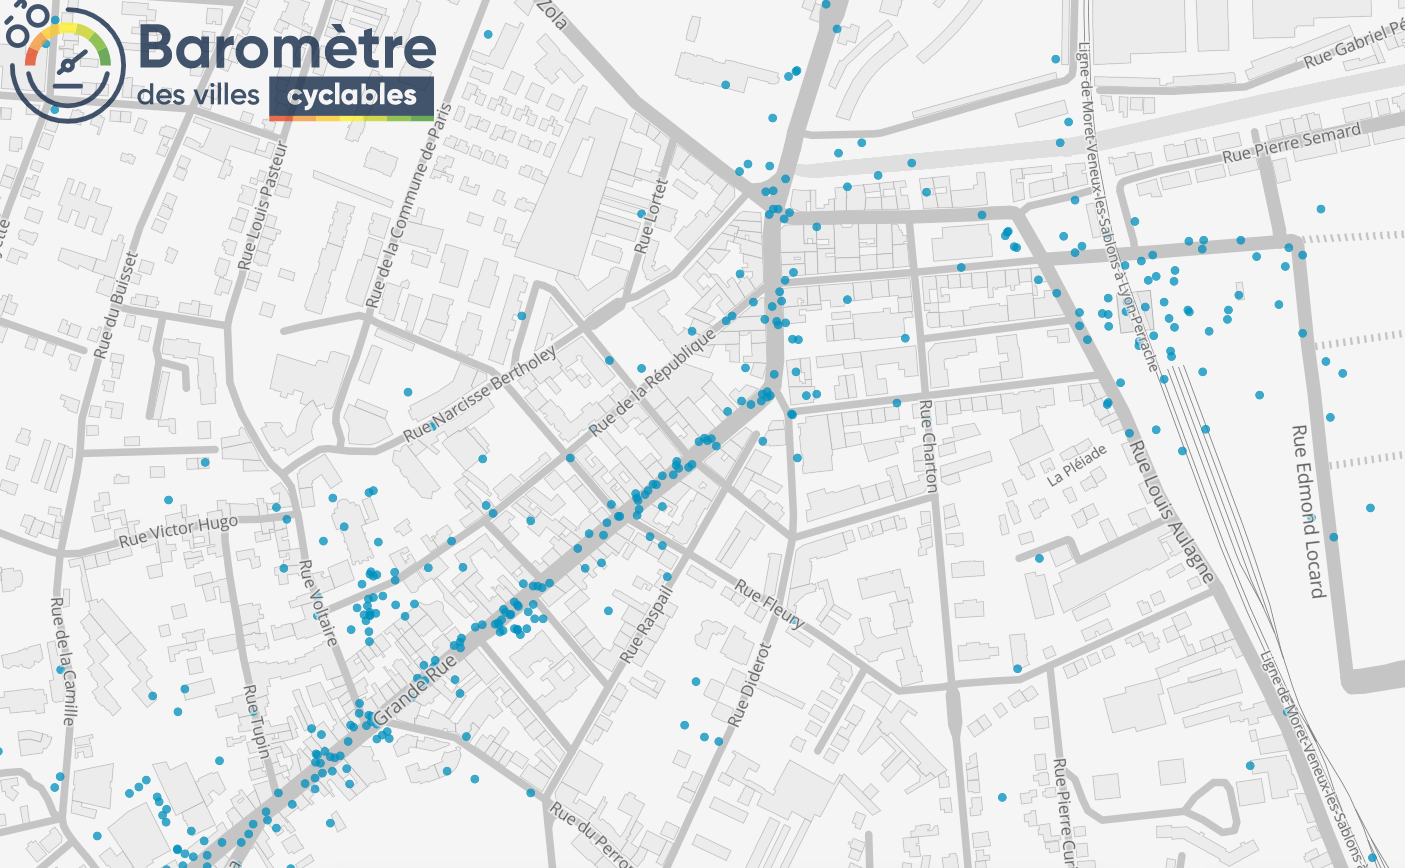 Les points manquant de stationnement vélo, relevés par le Baromètre des Villes Cyclables 2021. Grande Rue, place Anatole France, gare d'Oullins sont les secteurs les plus demandés.